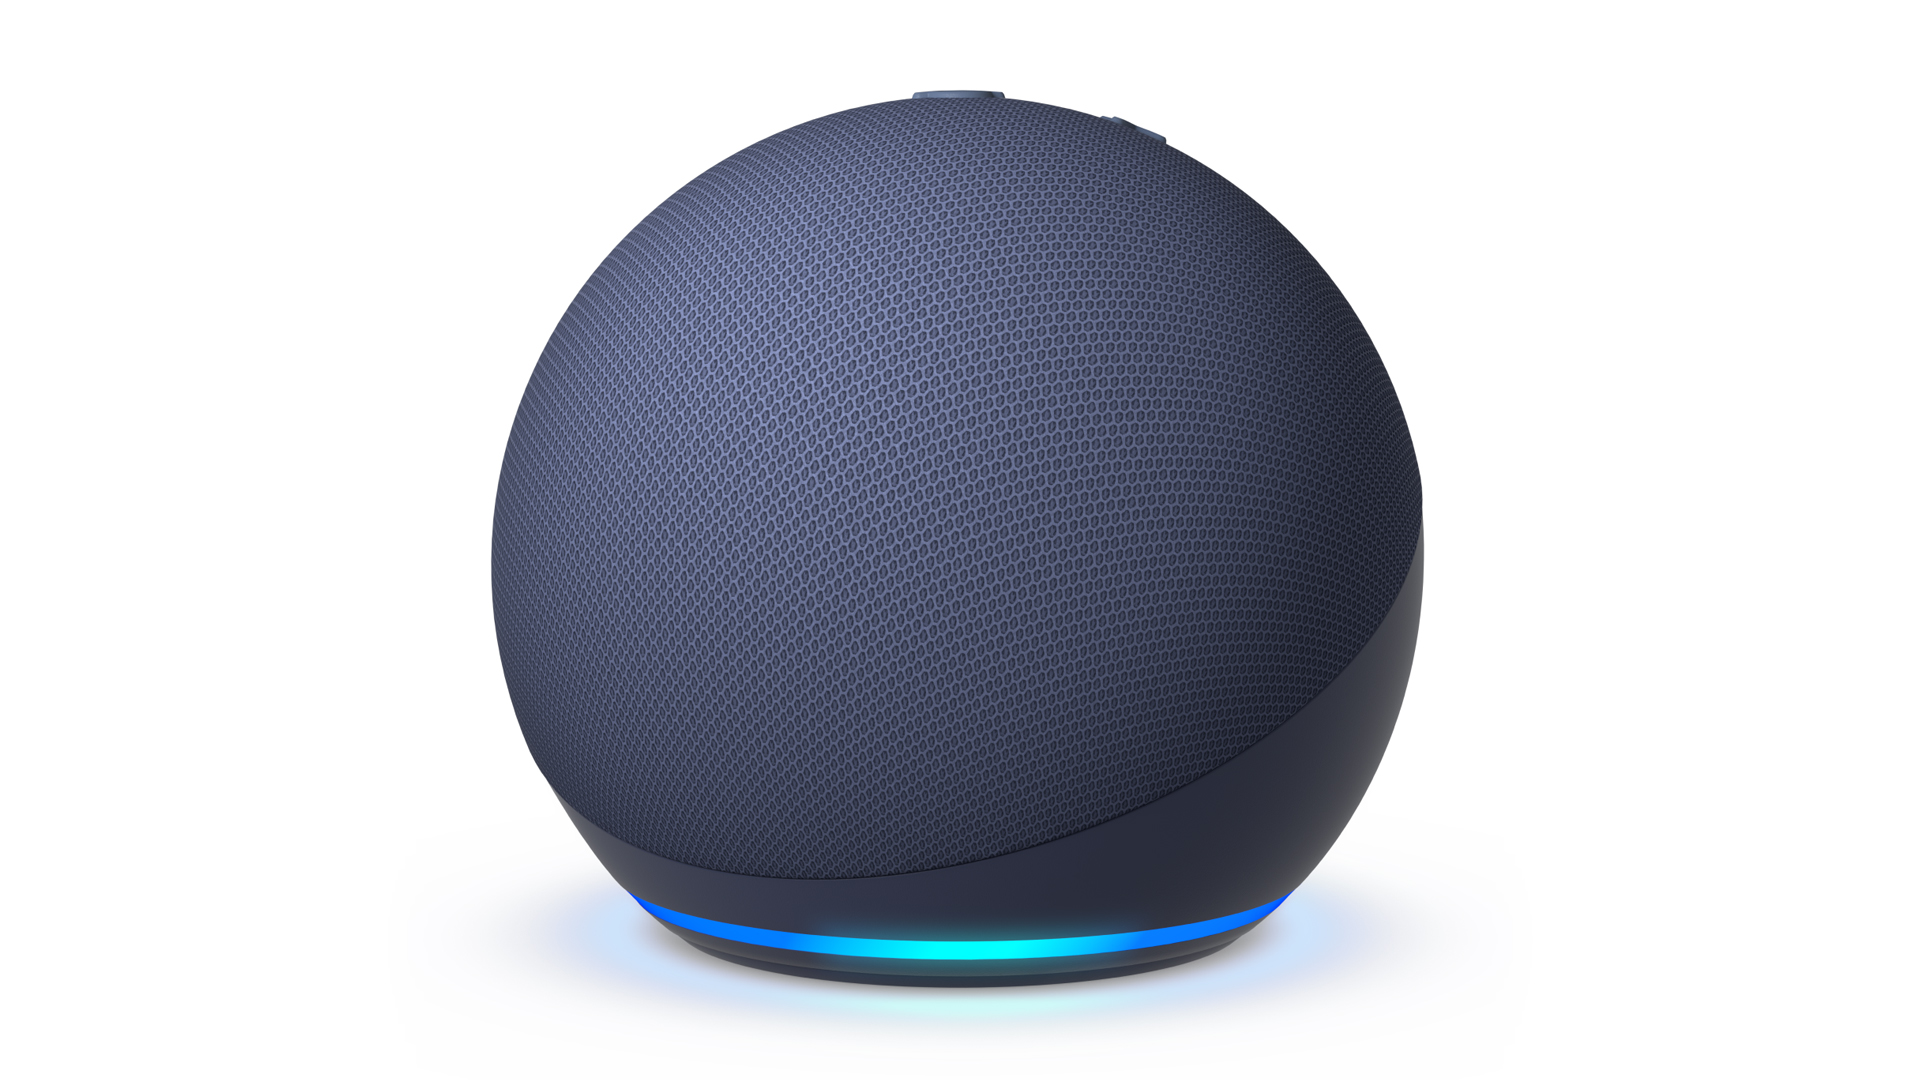 The 5th gen Echo Dot in blue